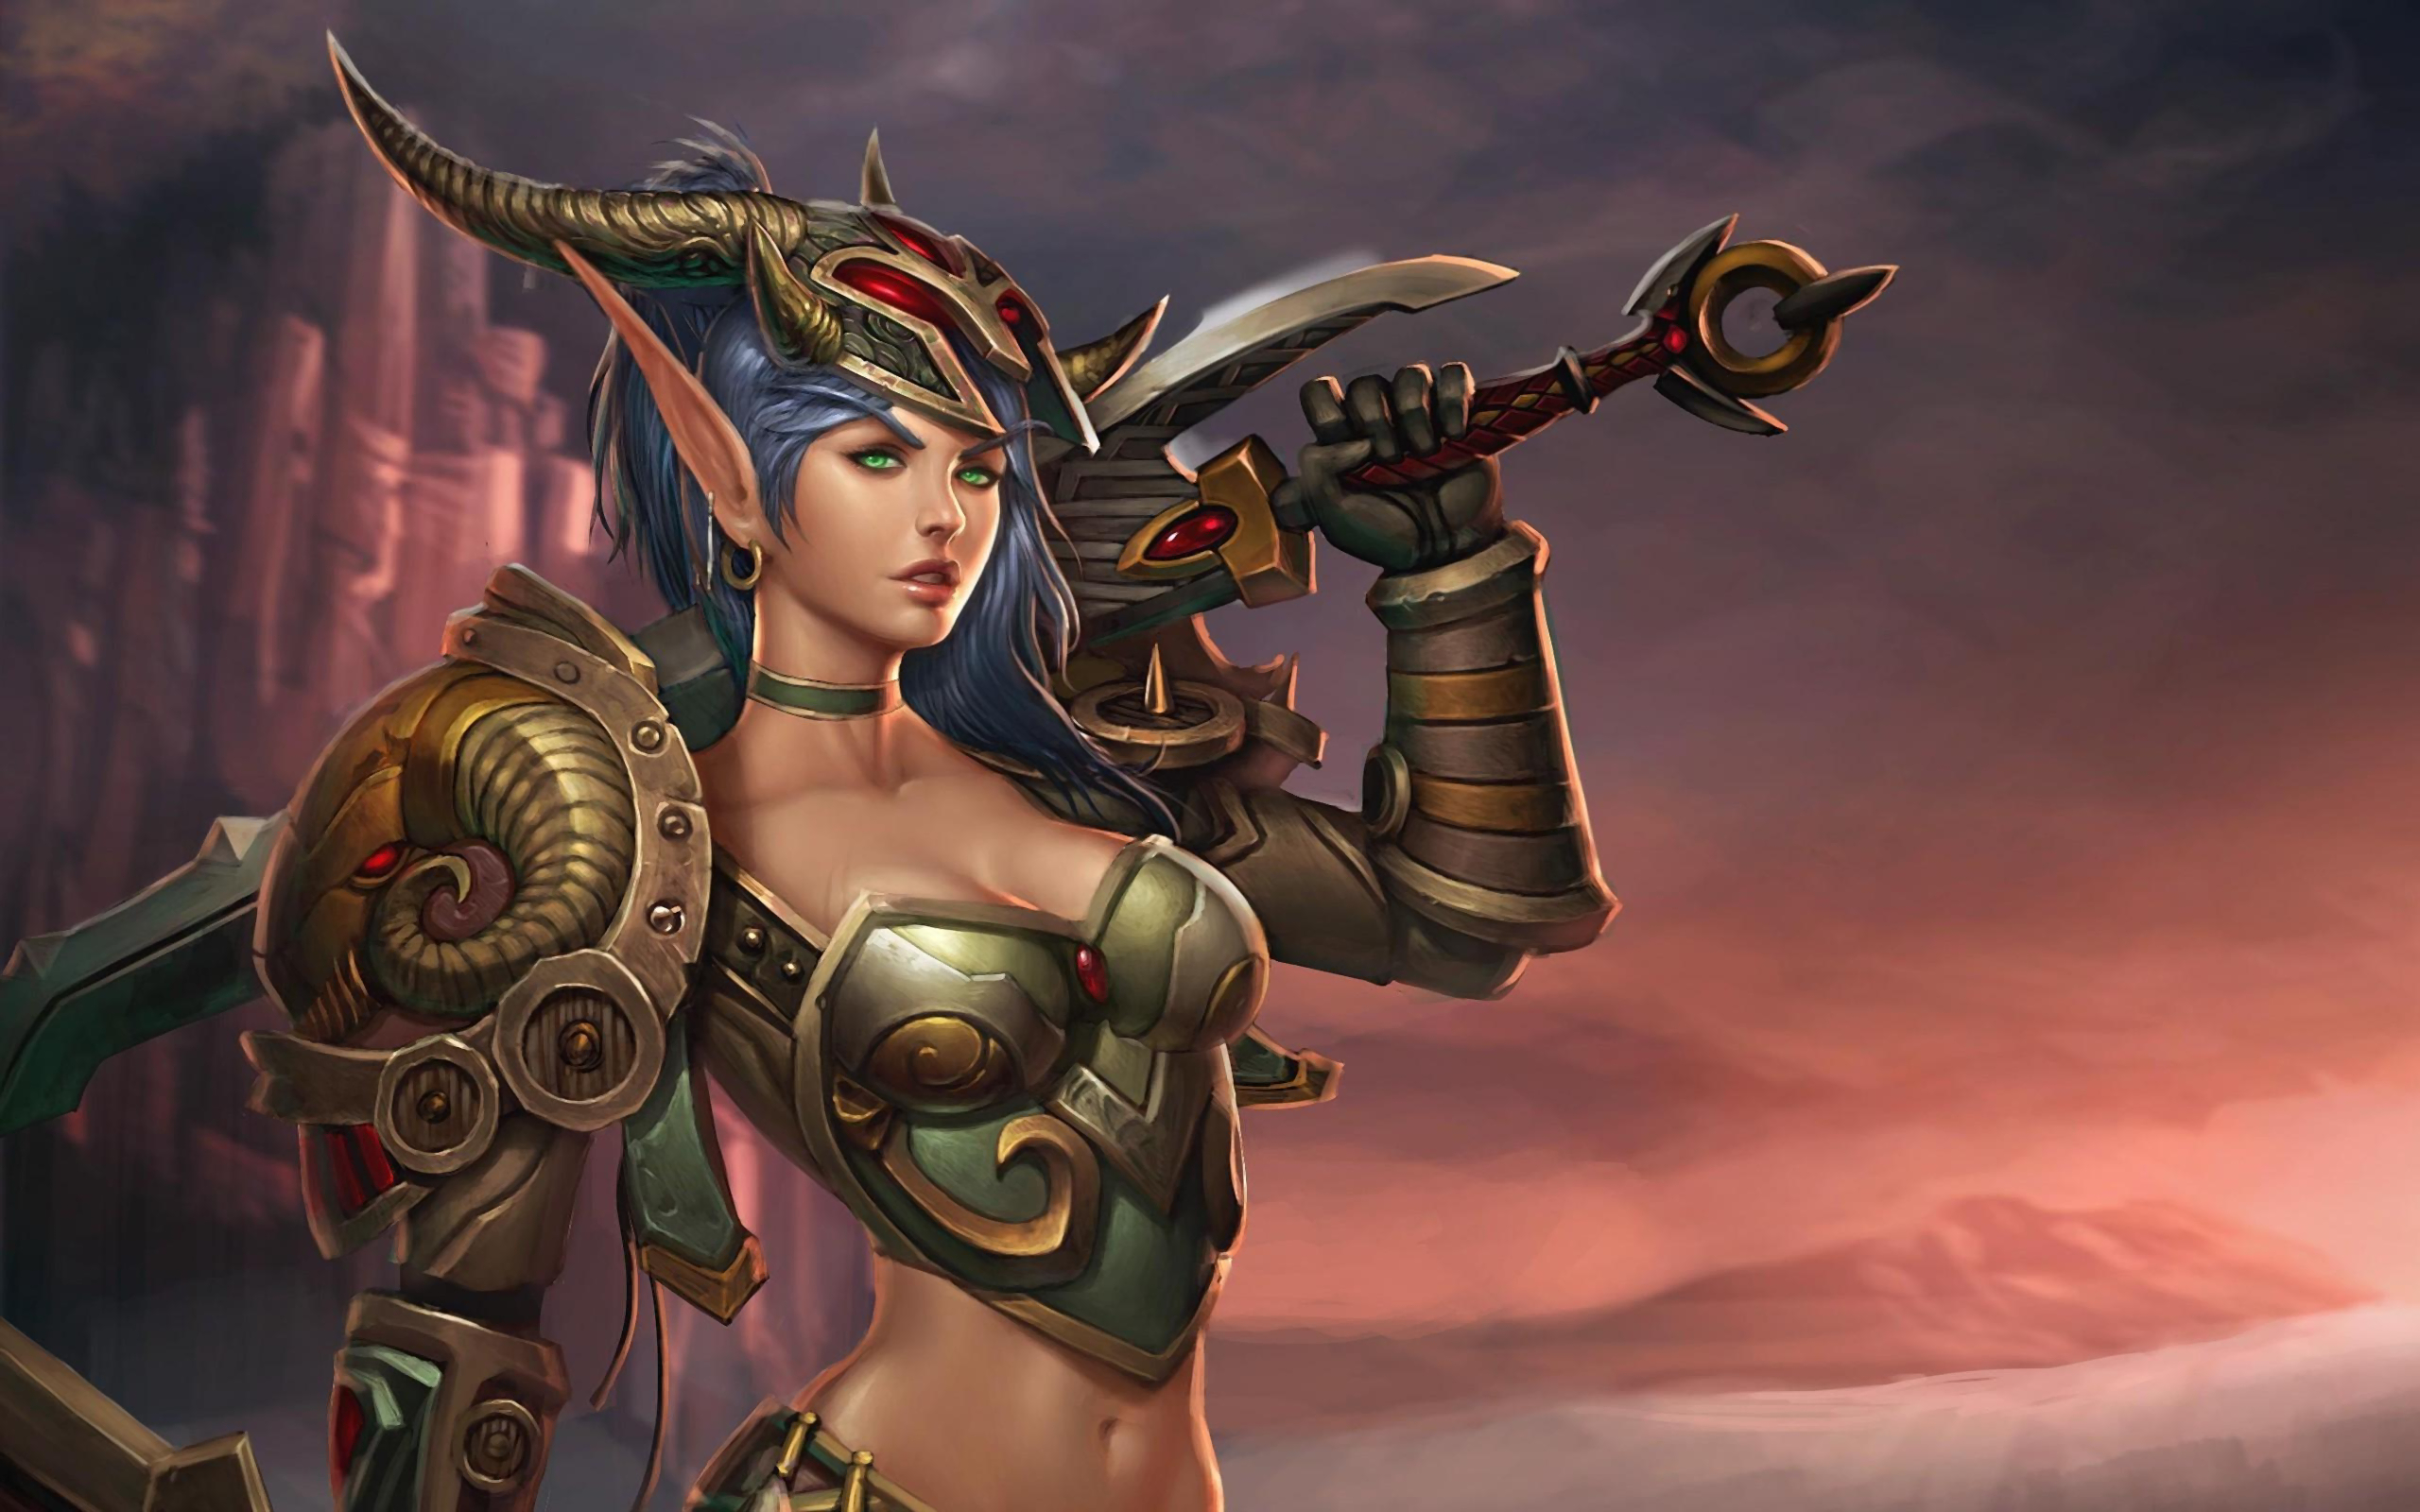 Descarga gratuita de fondo de pantalla para móvil de Fantasía, Warcraft, Armadura, Espada, Videojuego, World Of Warcraft, Mujer Guerrera.